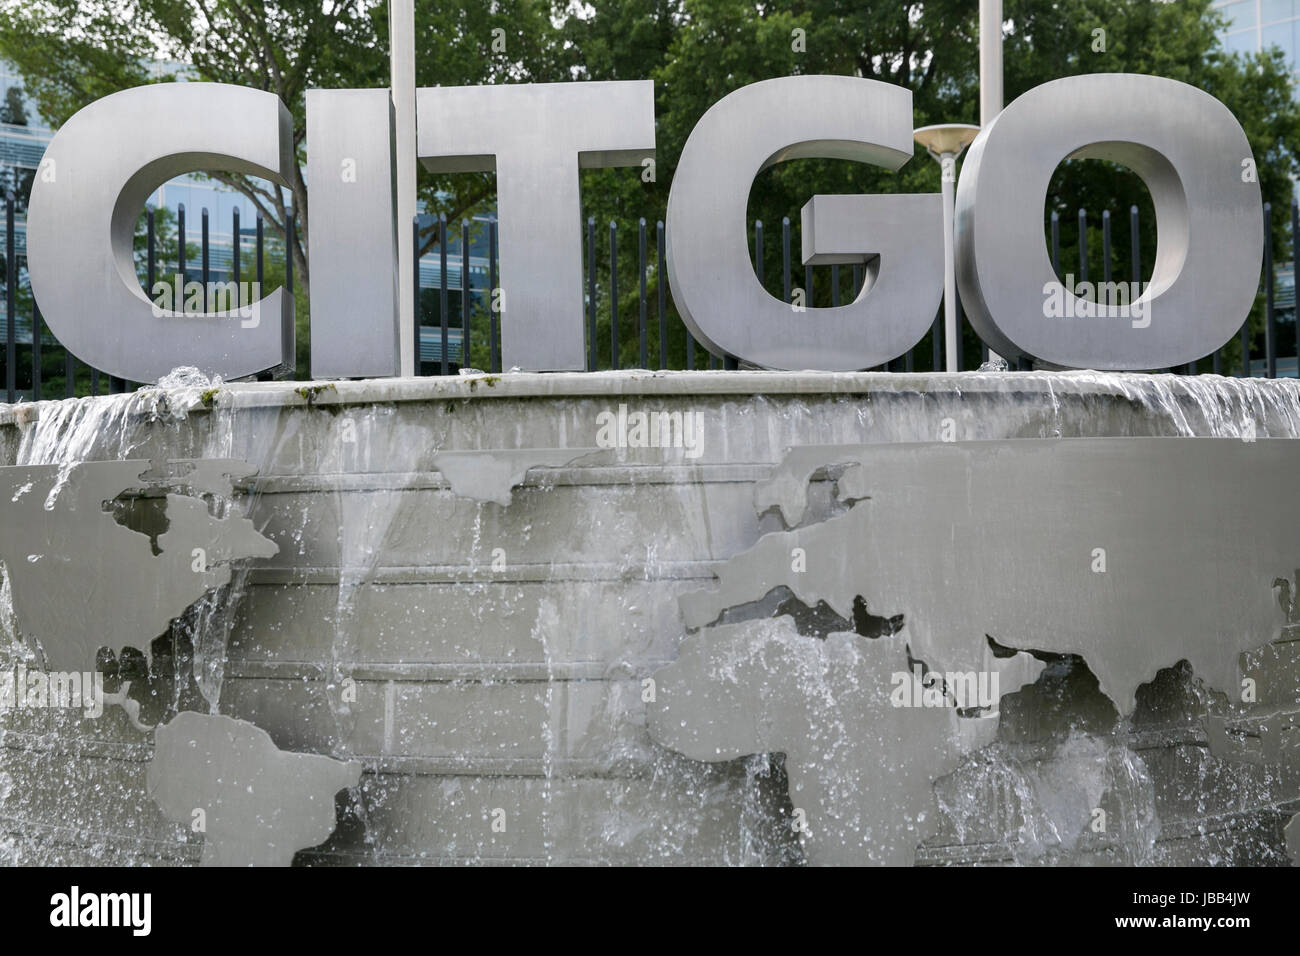 Un logo affiche à l'extérieur du siège de la CITGO Petroleum Corporation à Houston, Texas, le 27 mai 2017. Banque D'Images